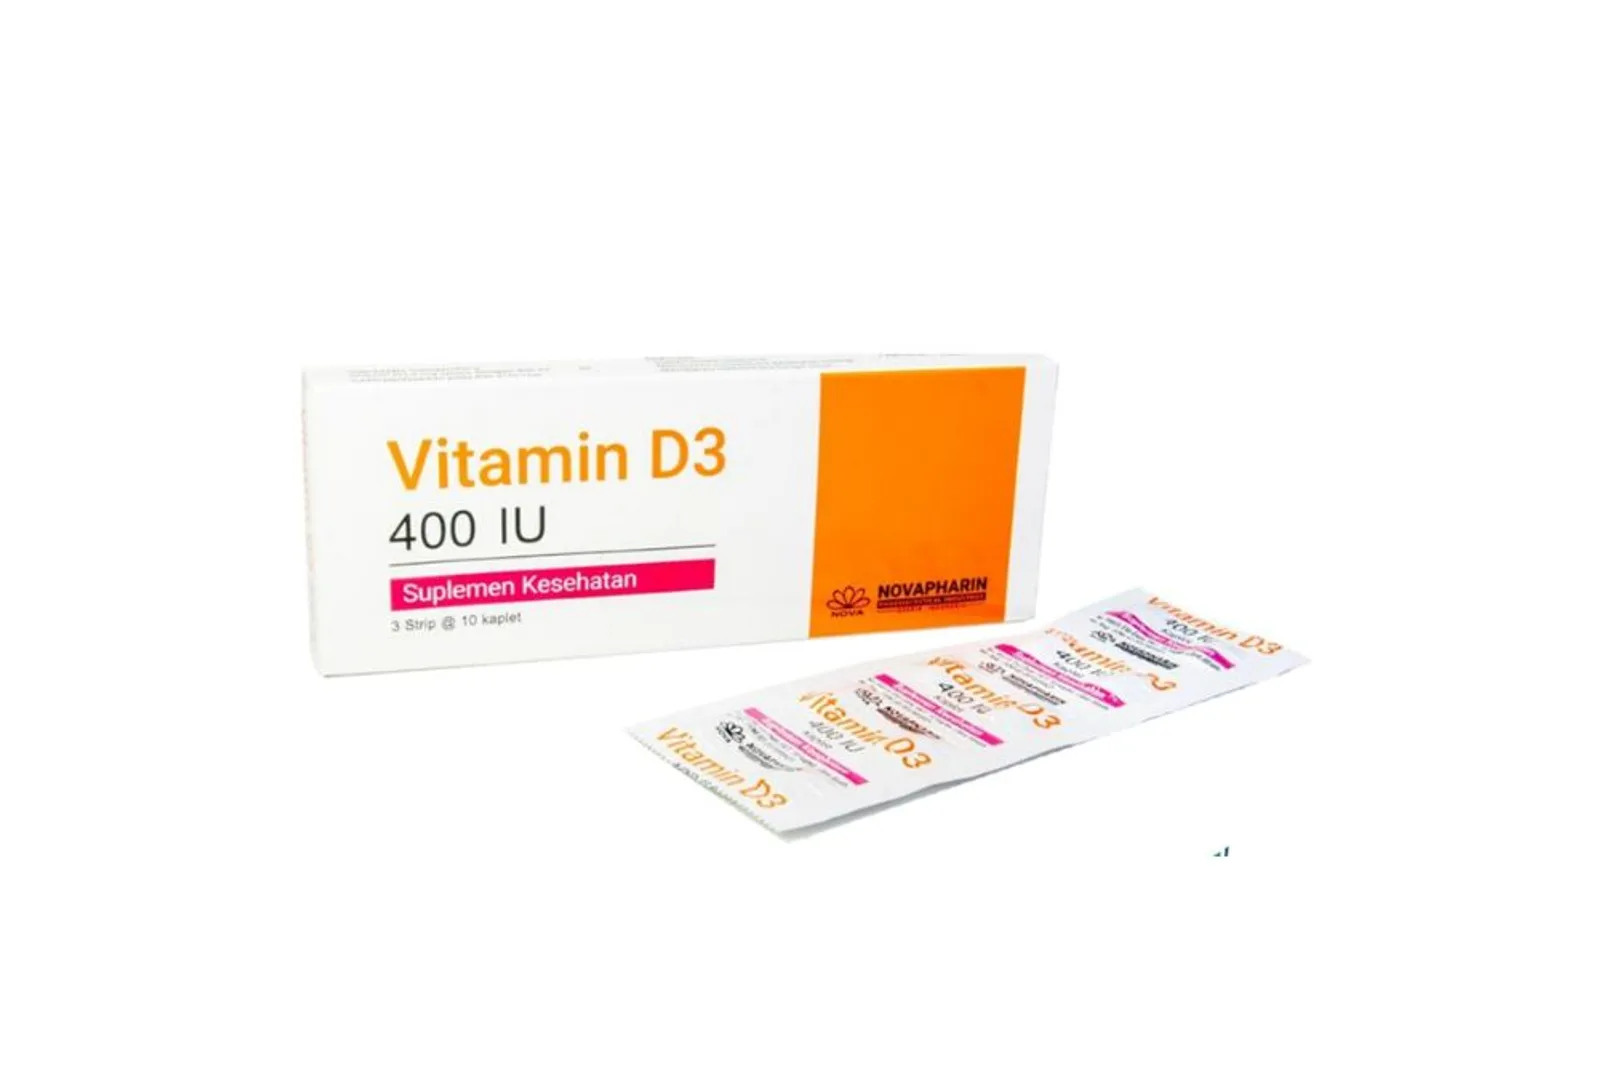 10 Vitamin D di Apotek yang Bagus untuk Kesehatan